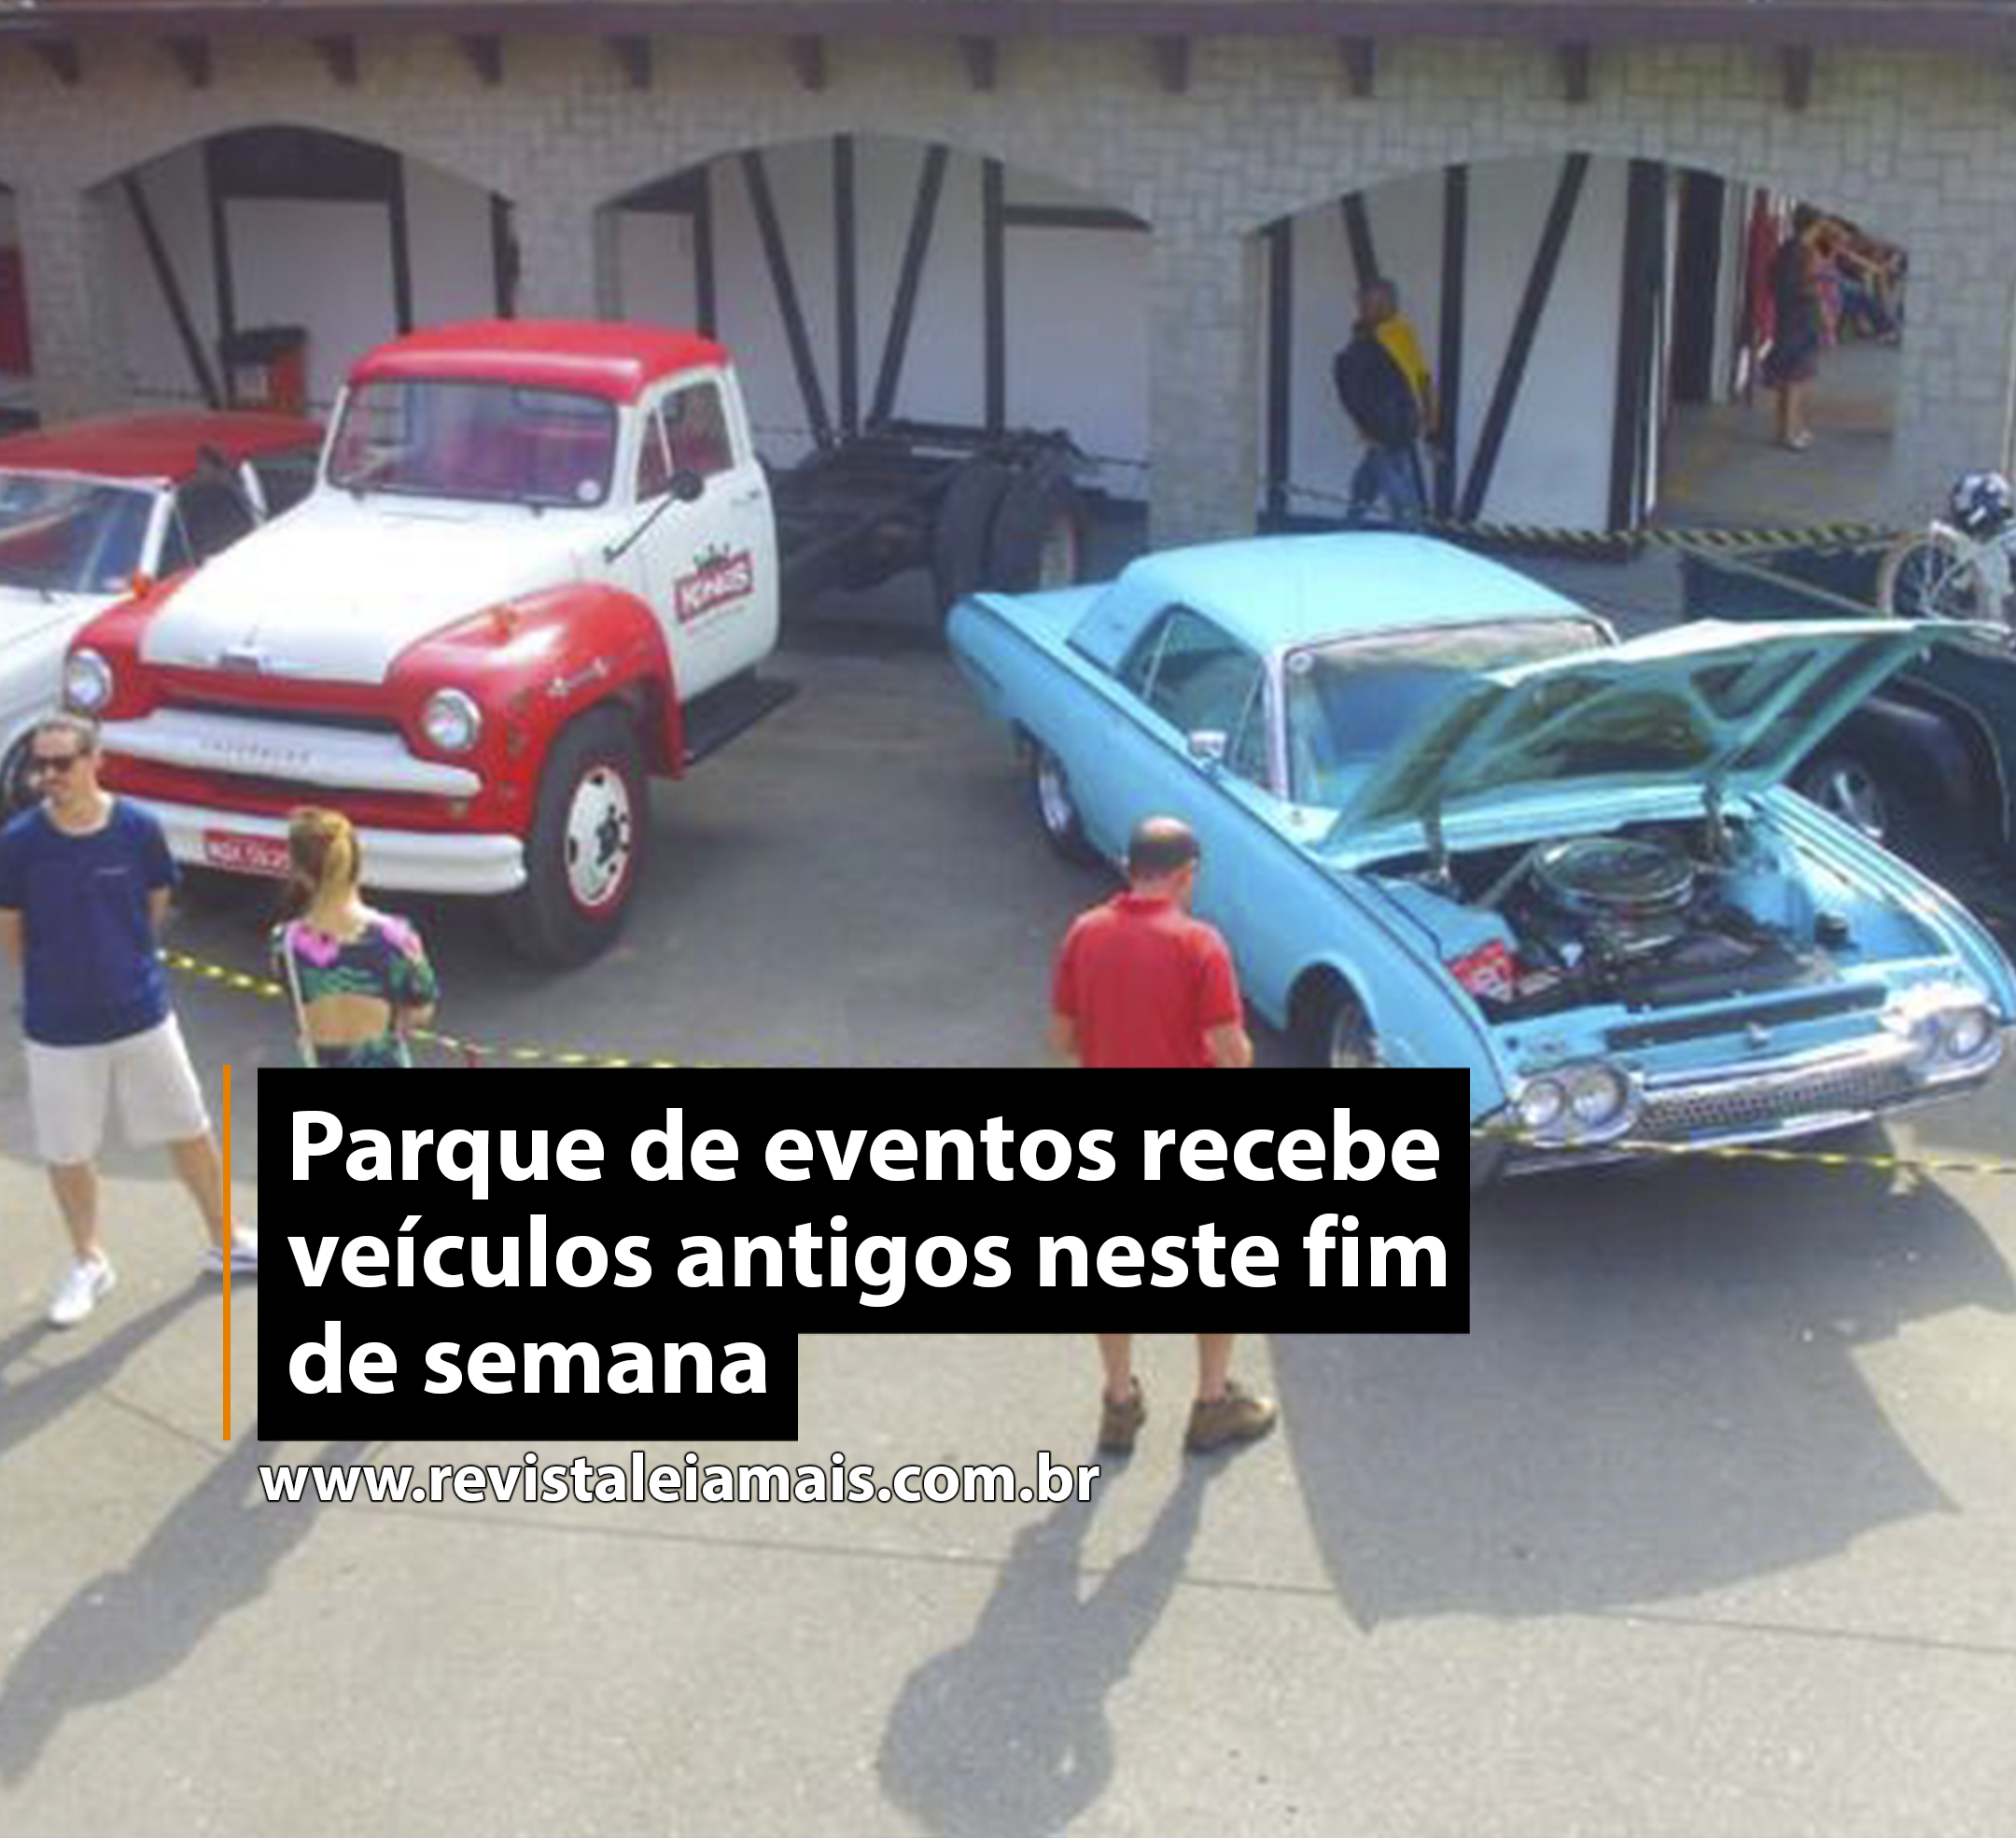 Parque de eventos recebe veículos antigos neste fim de semana